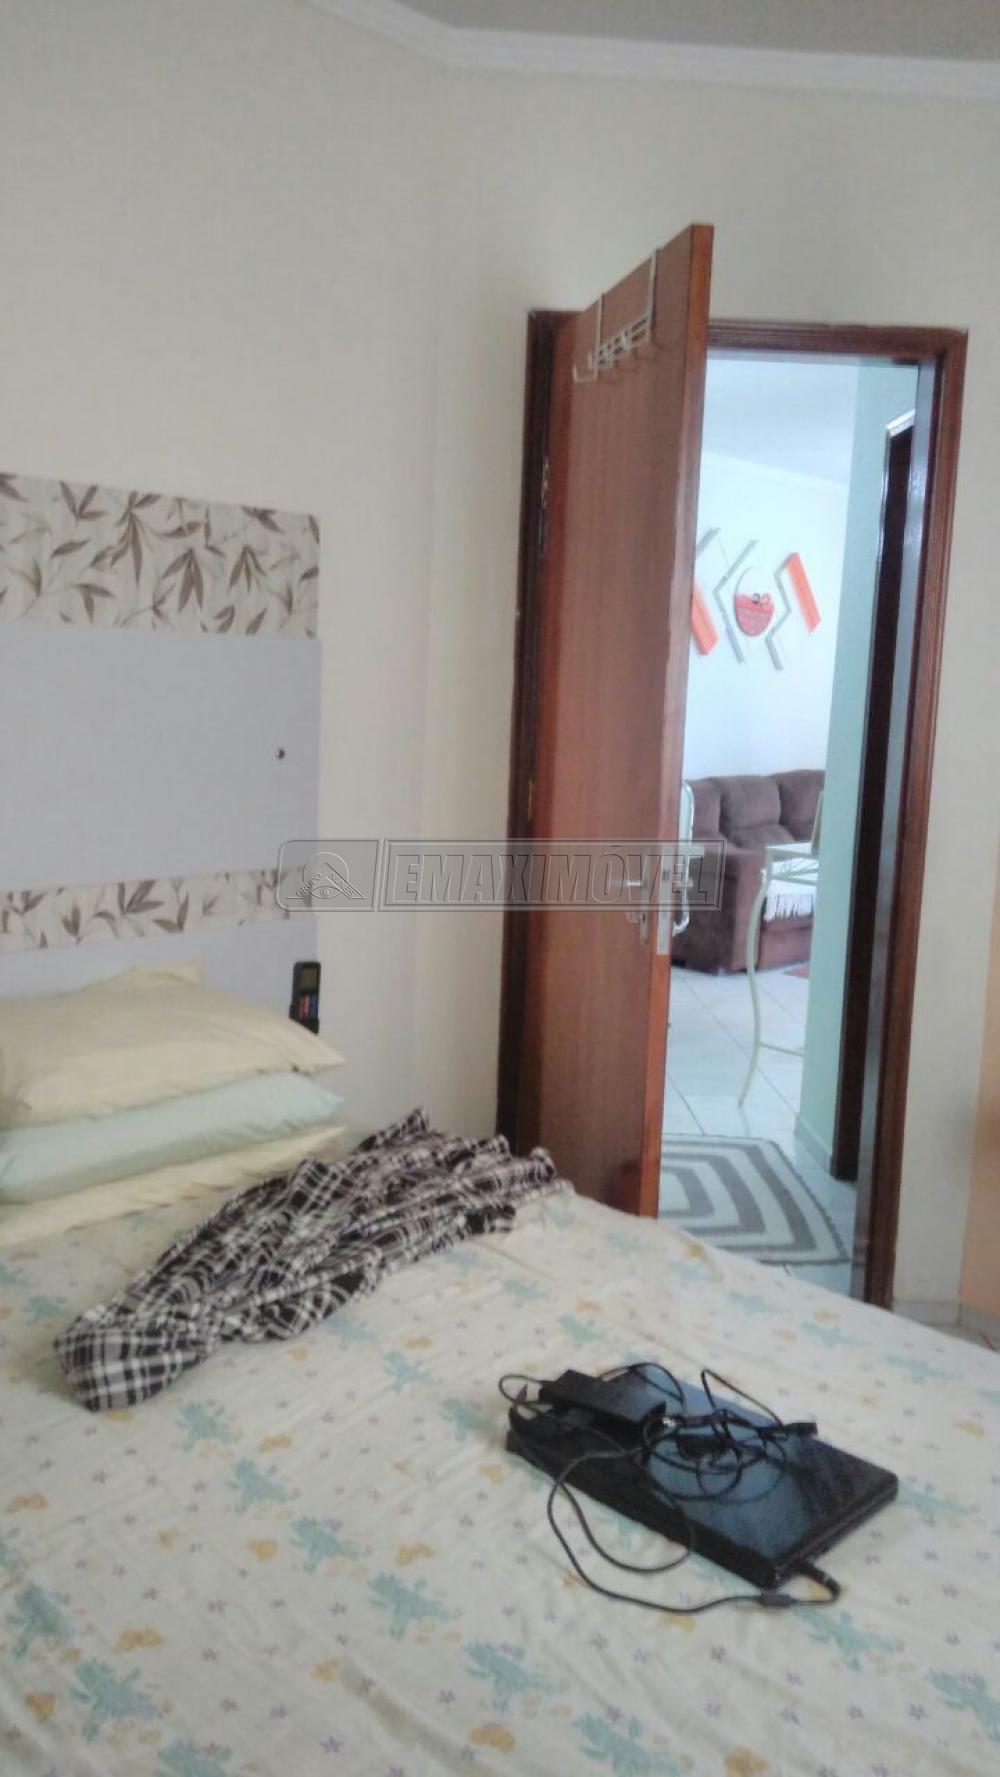 Comprar Casa / em Condomínios em Sorocaba R$ 320.000,00 - Foto 8